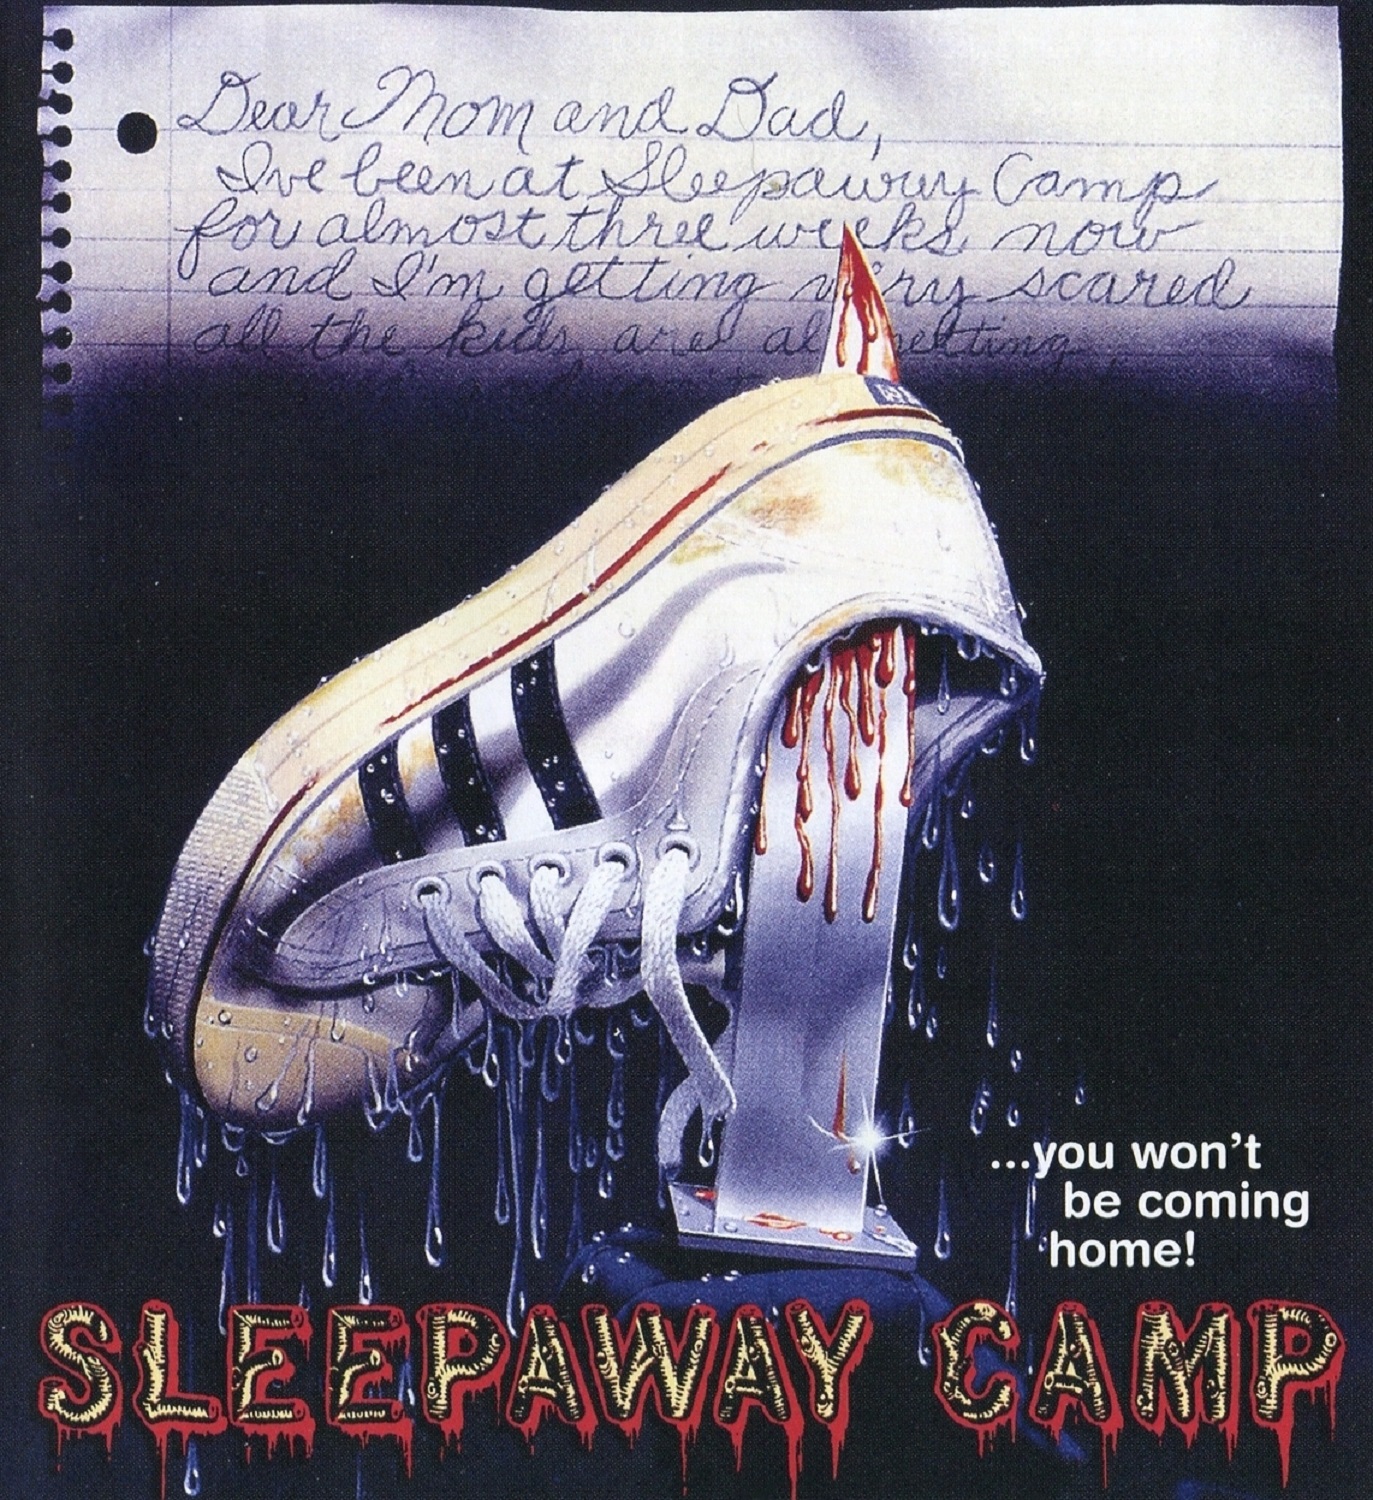 Sleepaway camp